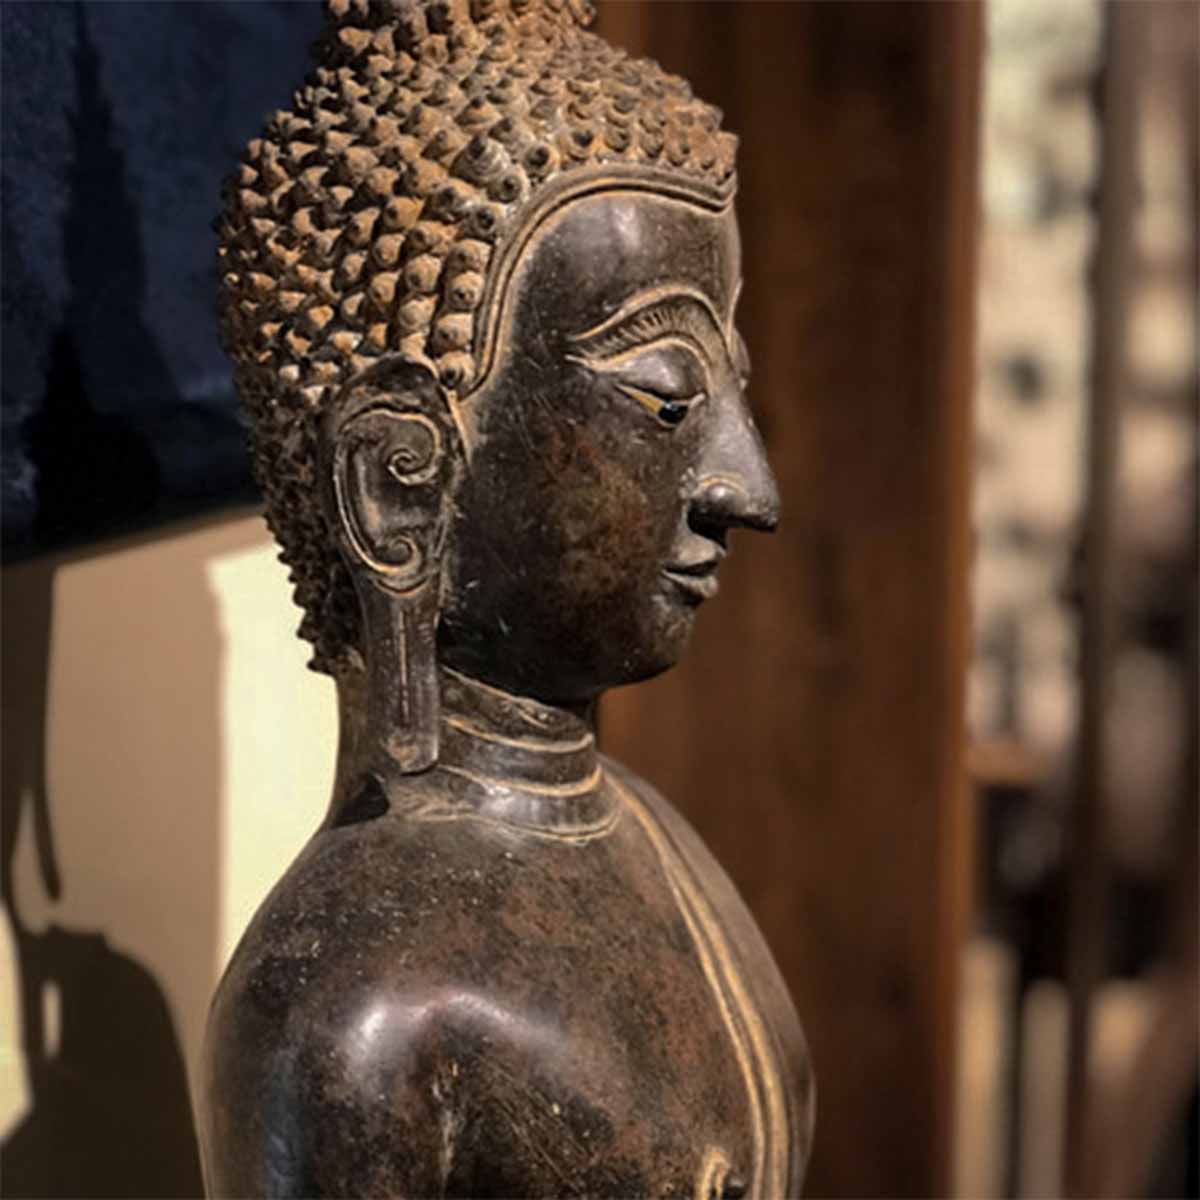 17th Century Thai Chaiprakarn Buddha